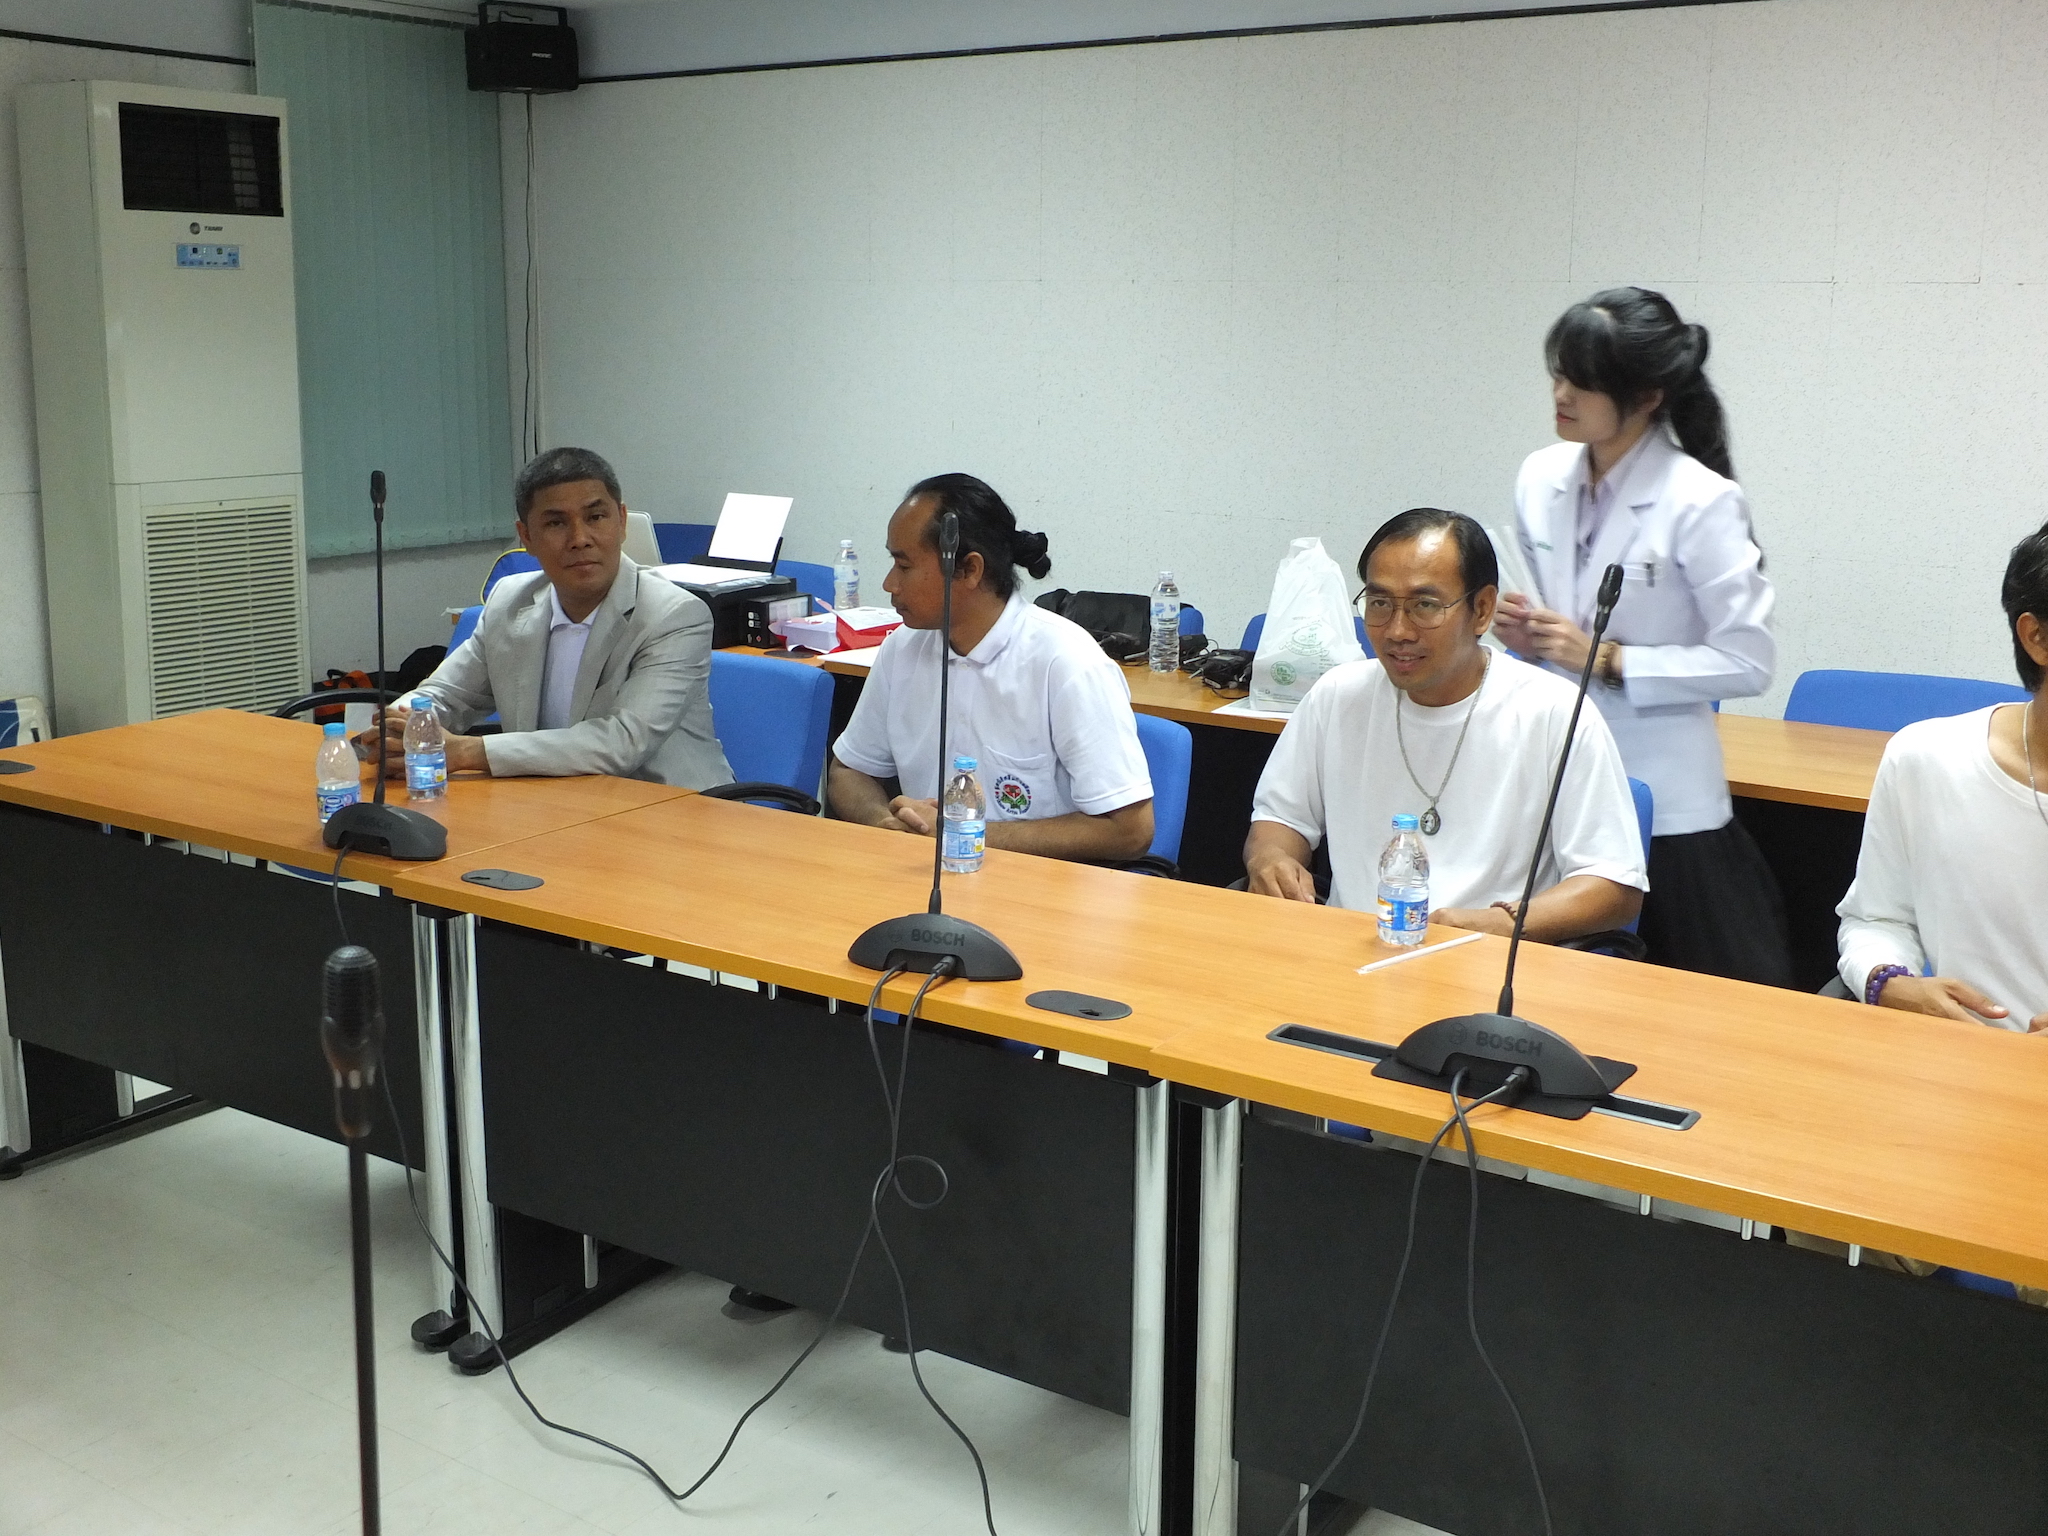 โครงการมอบทุนช่วยเหลือเครื่องมือแพทย์  วันที่ 19 กรกฎาคม 2558   ณ   สถานีวิทยุโทรทัศน์แห่งประเทศไทย  จังหวัดขอนแก่น สทท.11